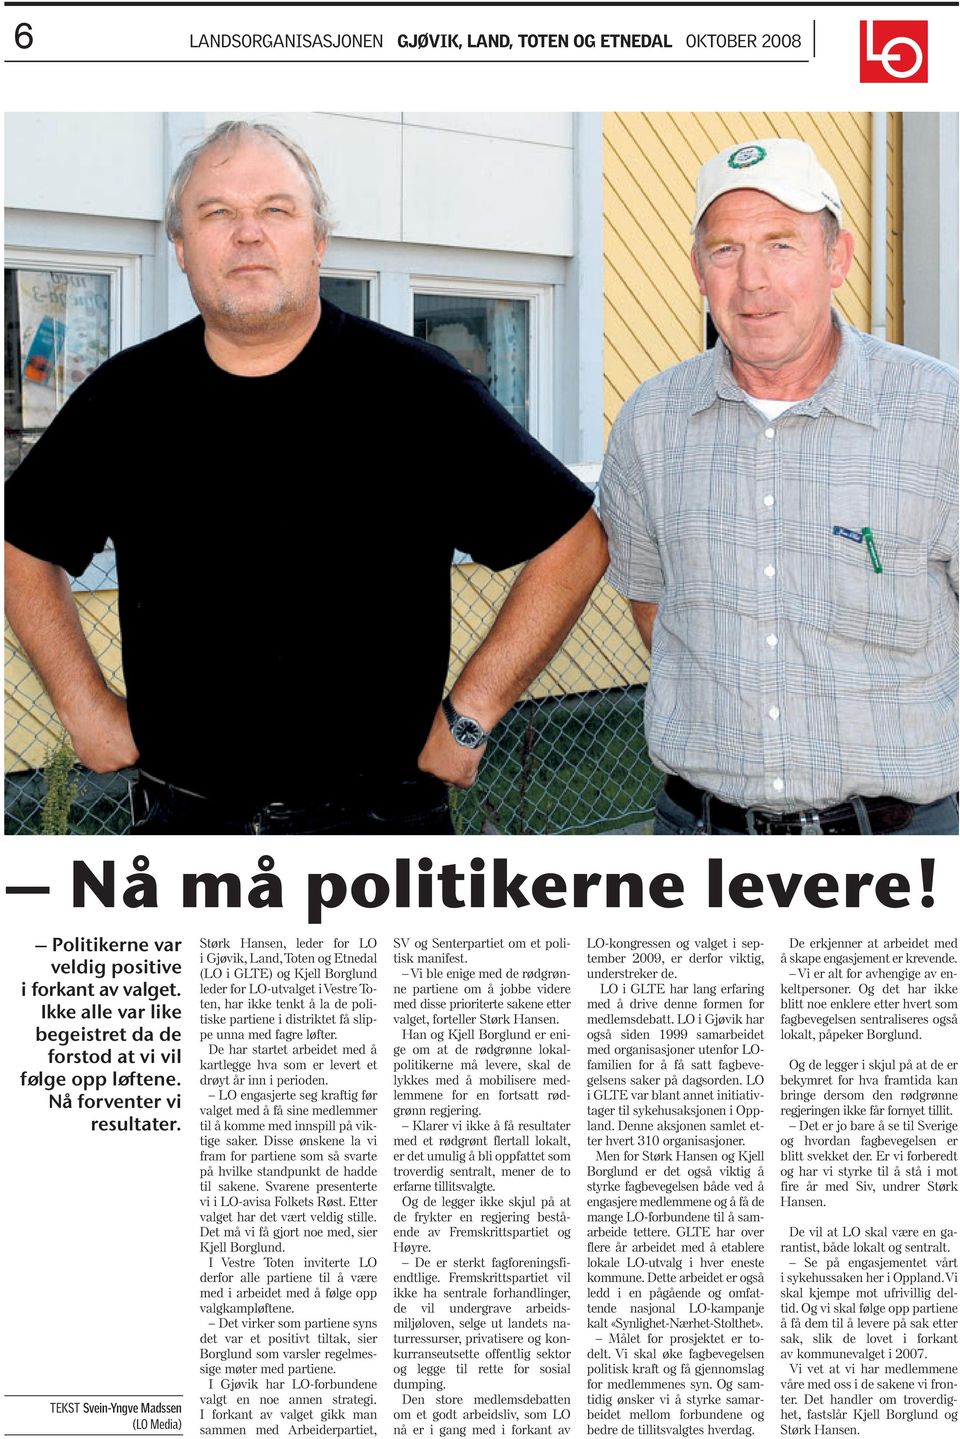 TEKST Svein-Yngve Madssen (LO Media) Størk Hansen, leder for LO i Gjøvik, Land,Toten og Etnedal (LO i GLTE) og Kjell Borglund leder for LO-utvalget i Vestre Toten, har ikke tenkt å la de politiske